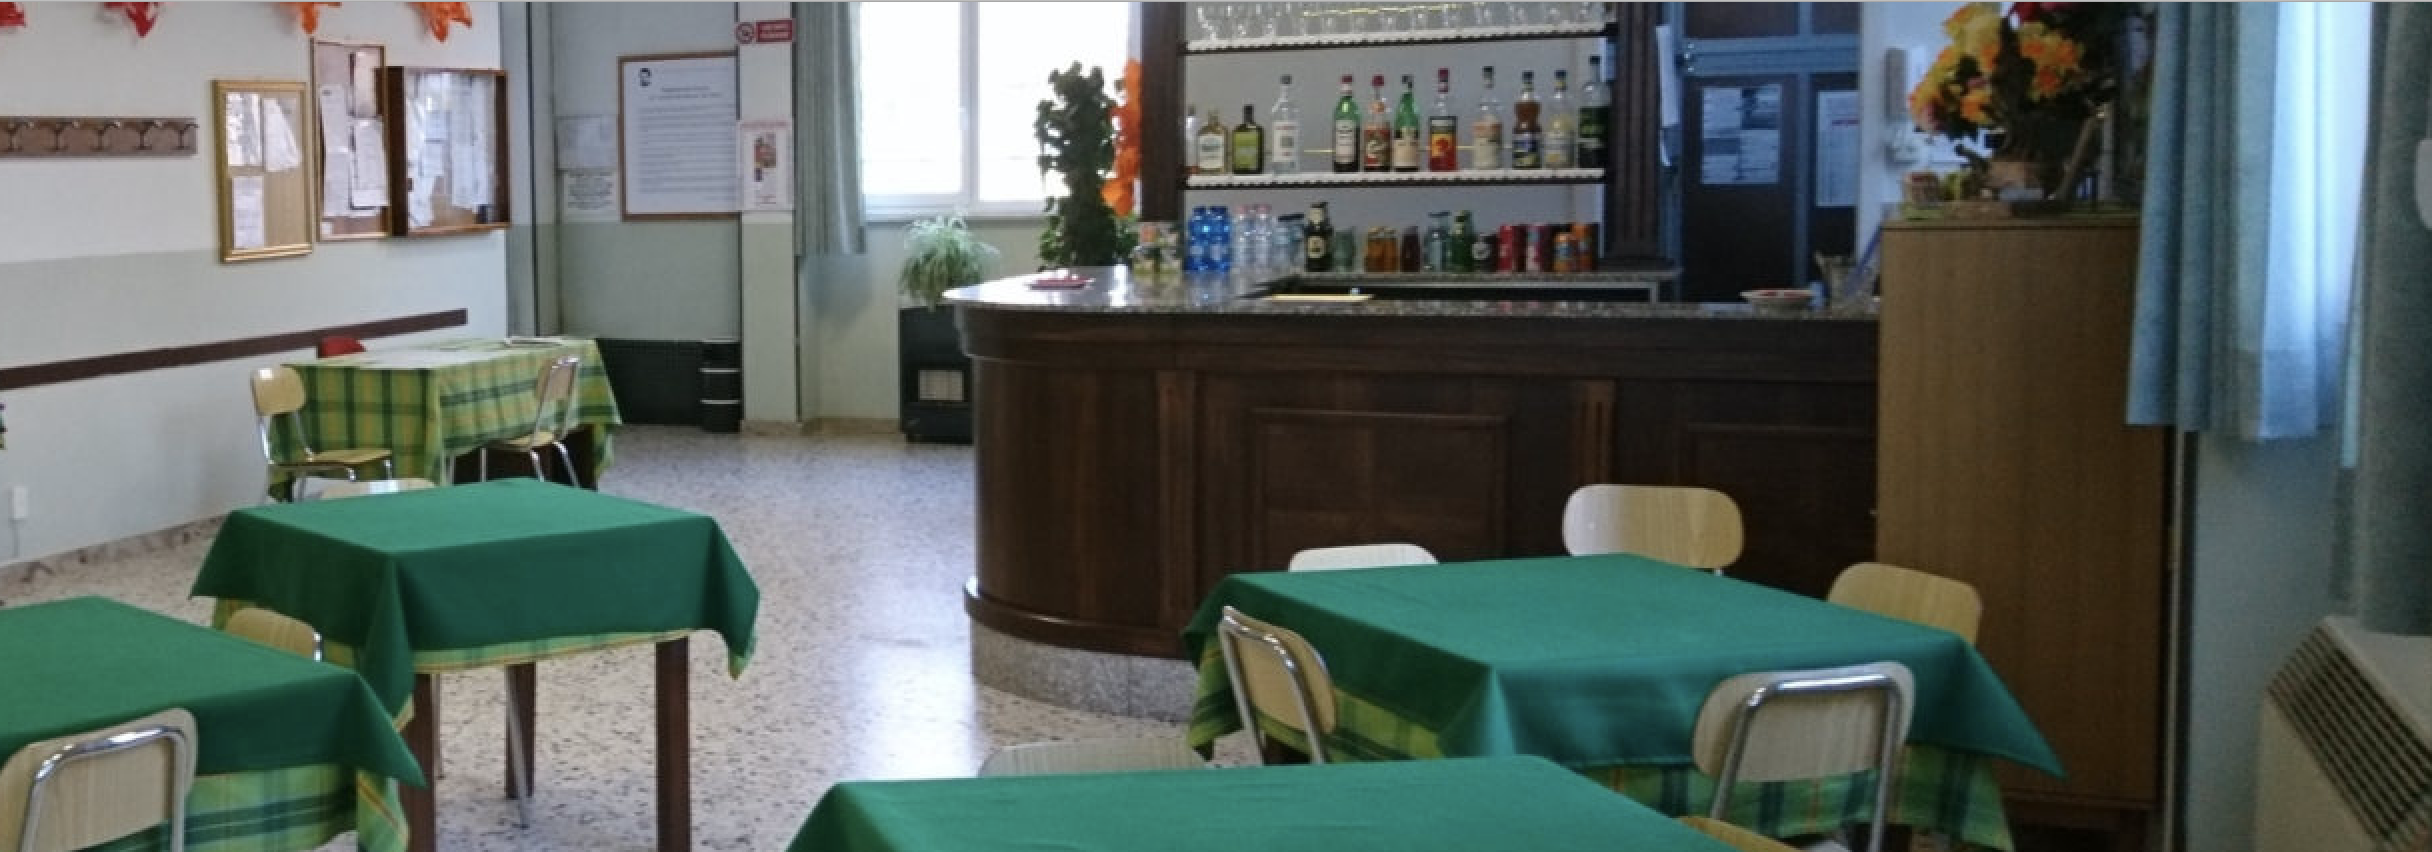 Cuneo - Centro anziani dei Salesiani